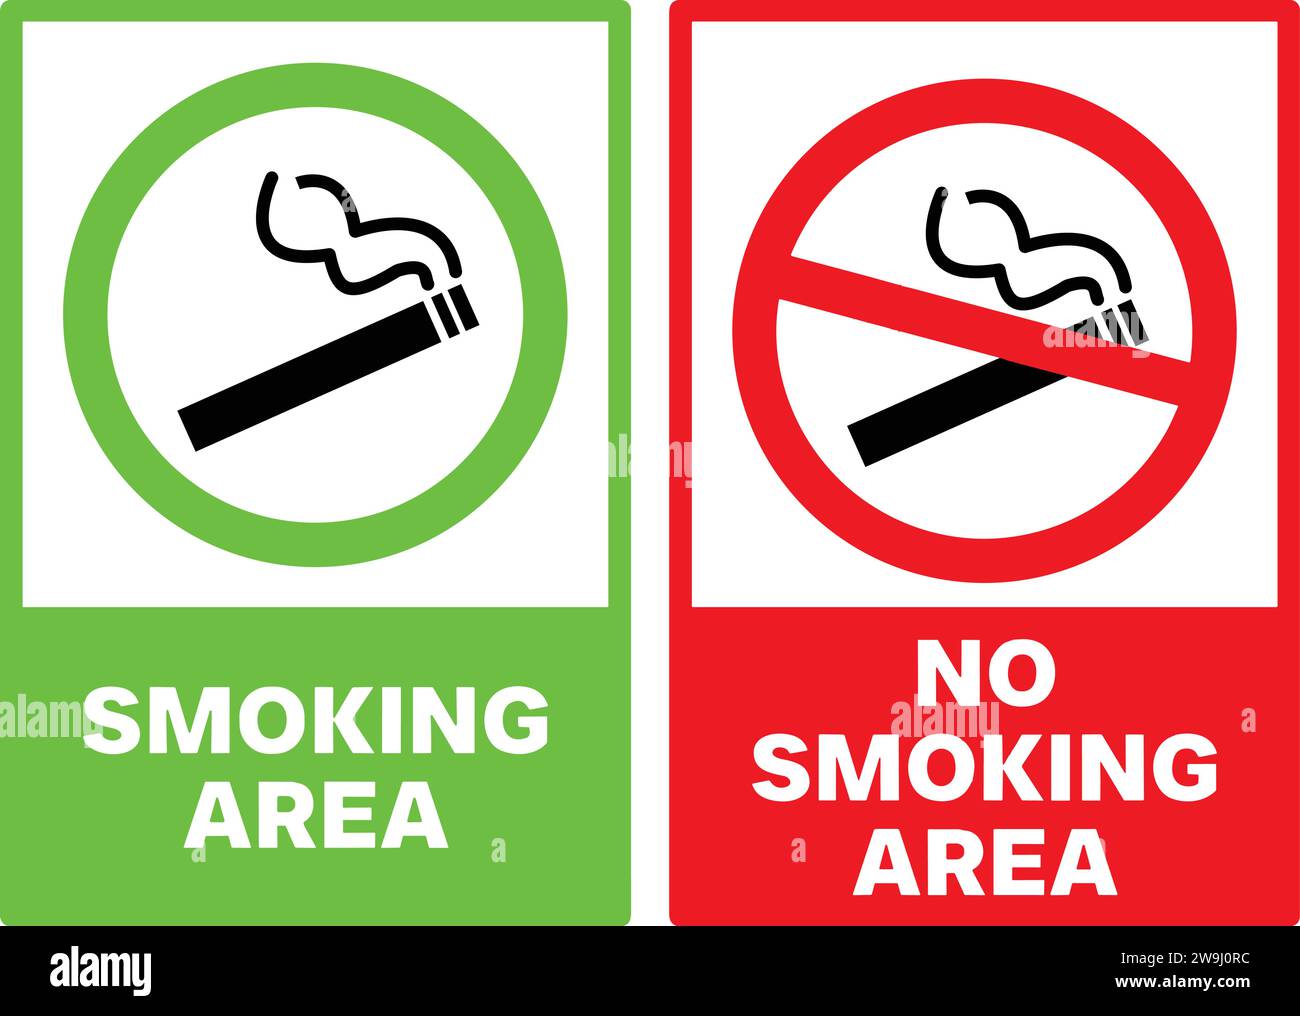 Smoking Area and No smoking sign | Smoking Area and No smoking area vector Stock Vector